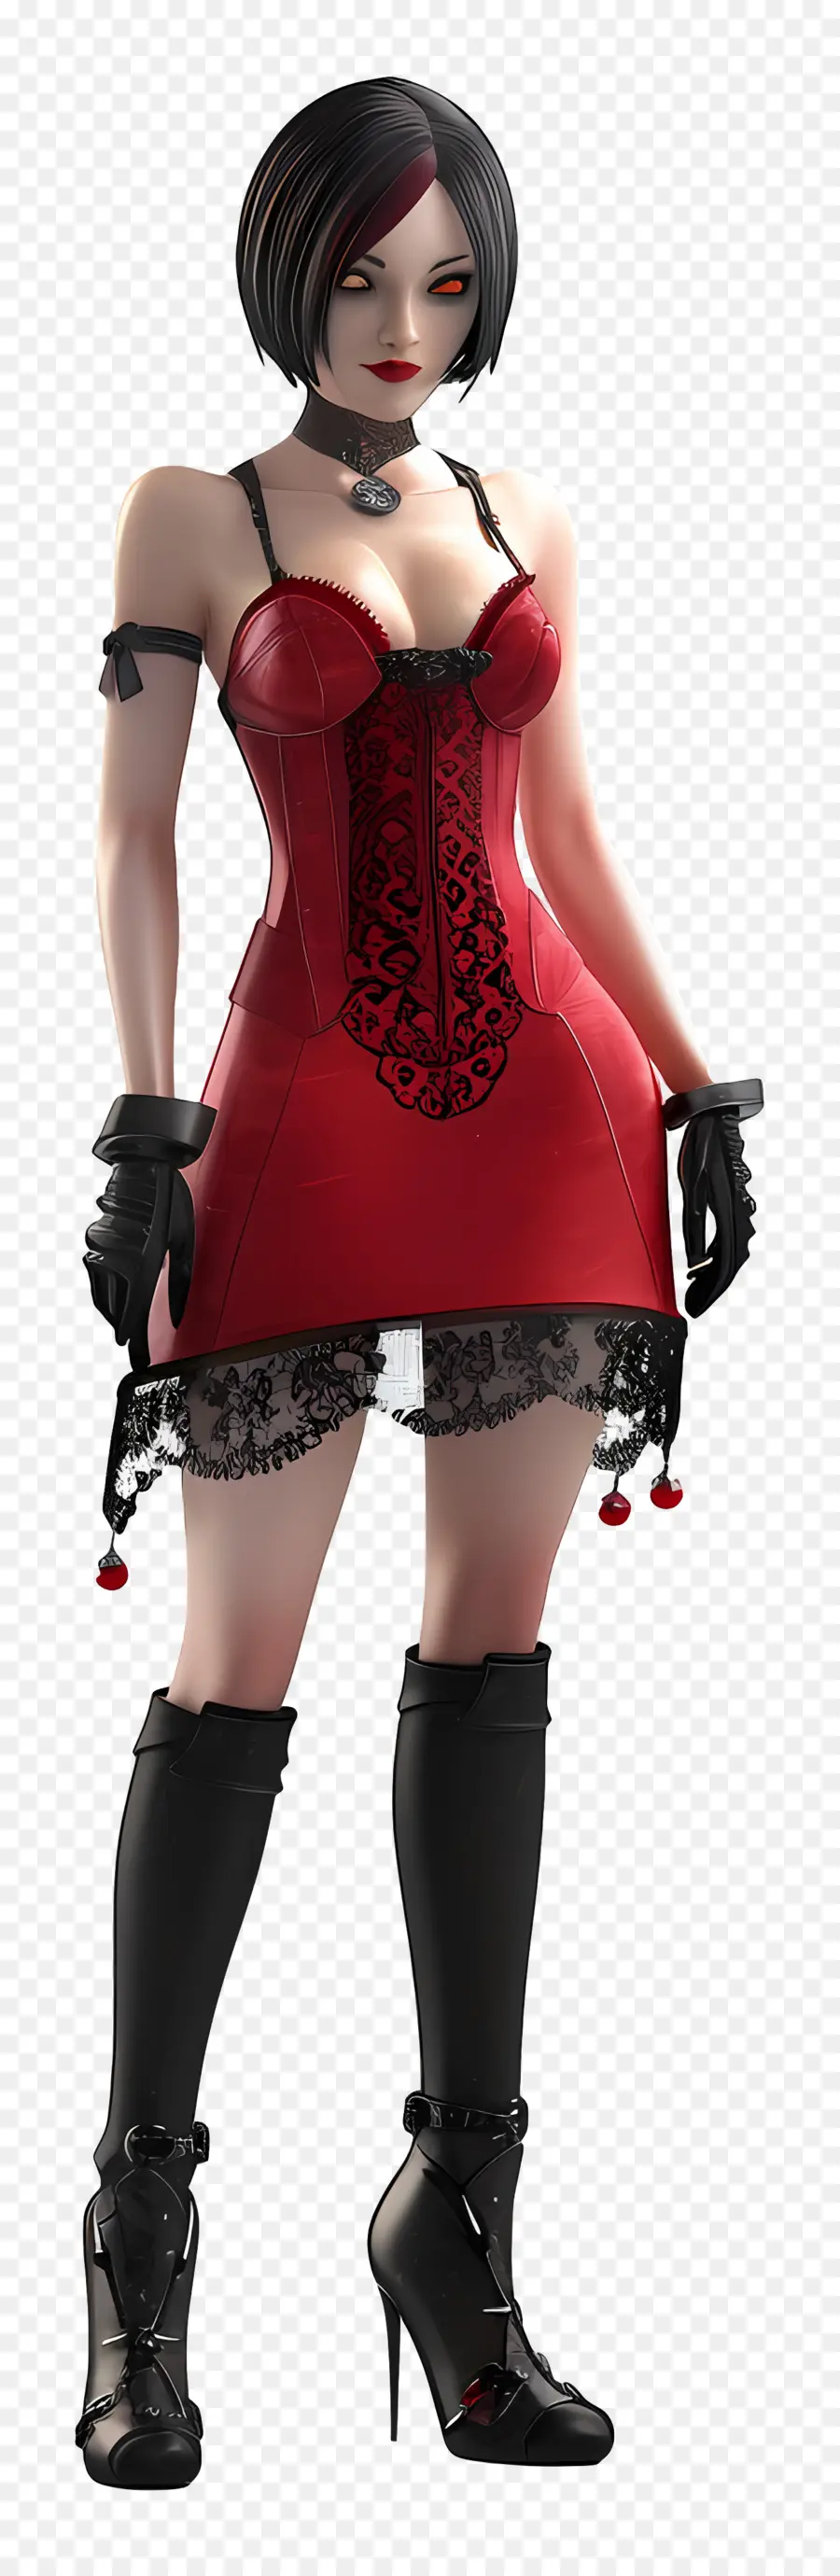 Ada Wong Figur Red Corsett Kleid mit hohen Stiefeln schwarze Handschuhe blonde Haare - Blonde Frau im roten Korsettkleid